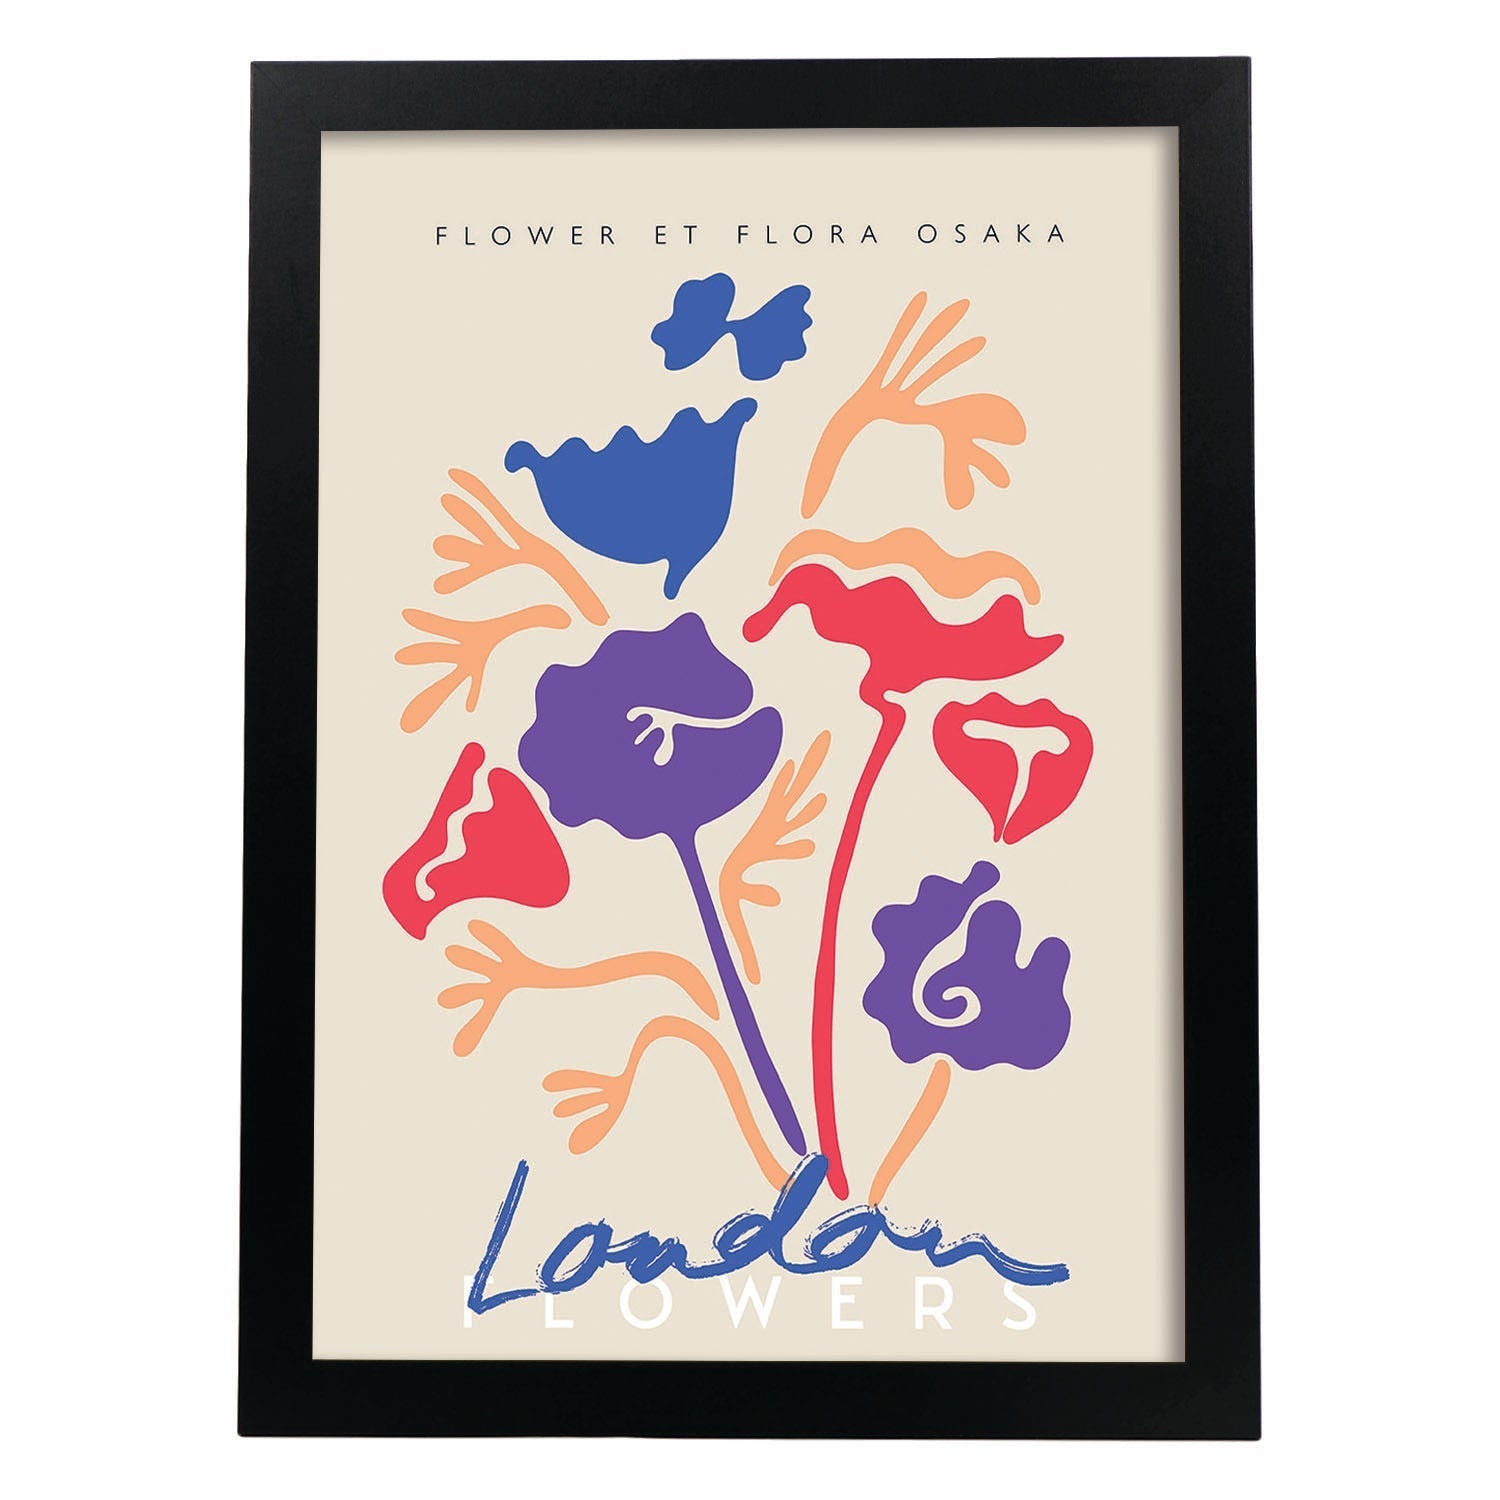 Lamina artistica decorativa con ilustración de Flores de Londres-Artwork-Nacnic-A3-Marco Negro-Nacnic Estudio SL